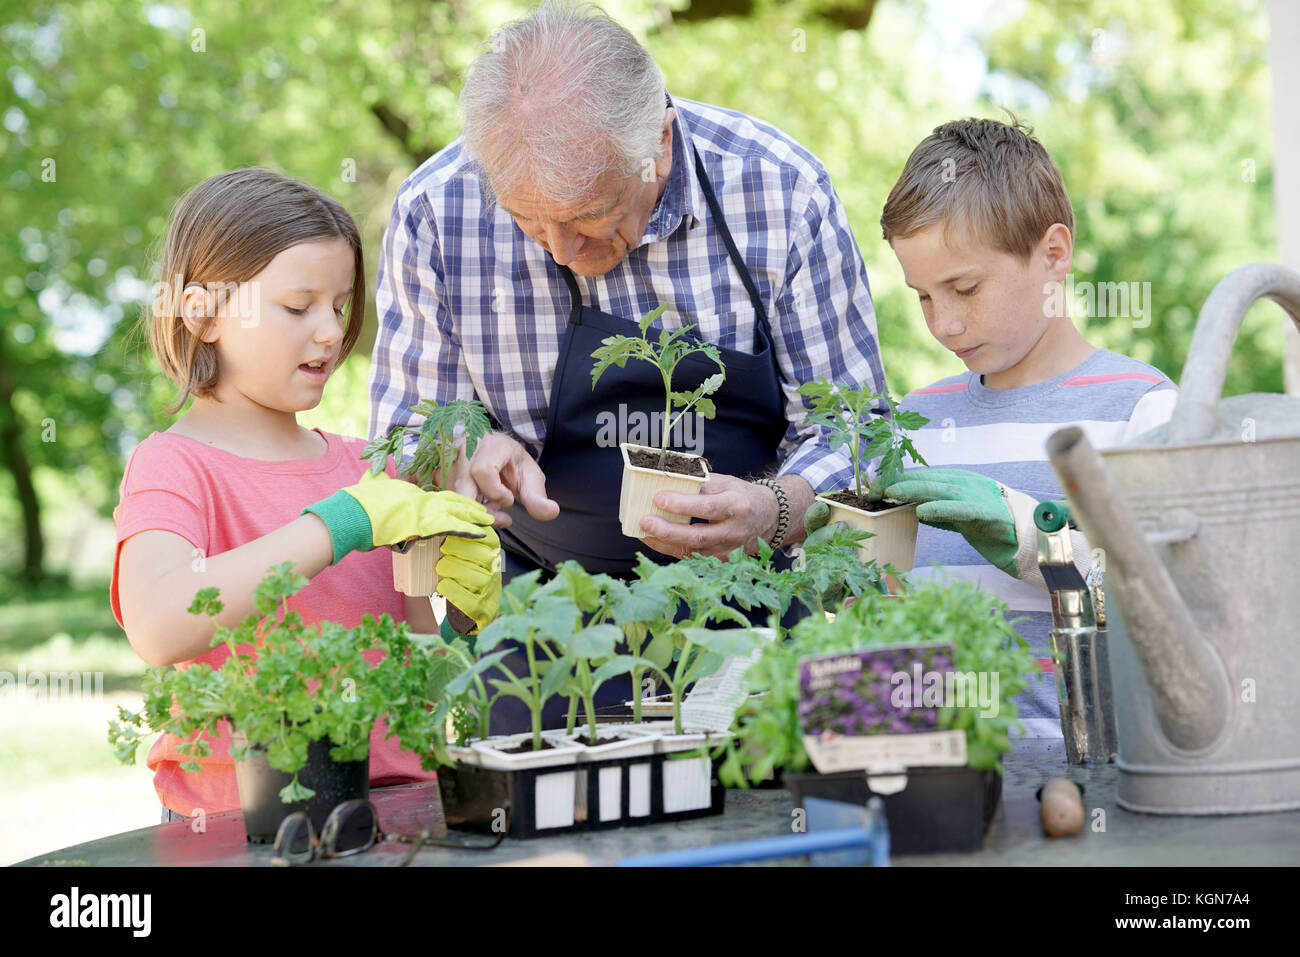 Kids helping grandpa with gardening Stock Photo